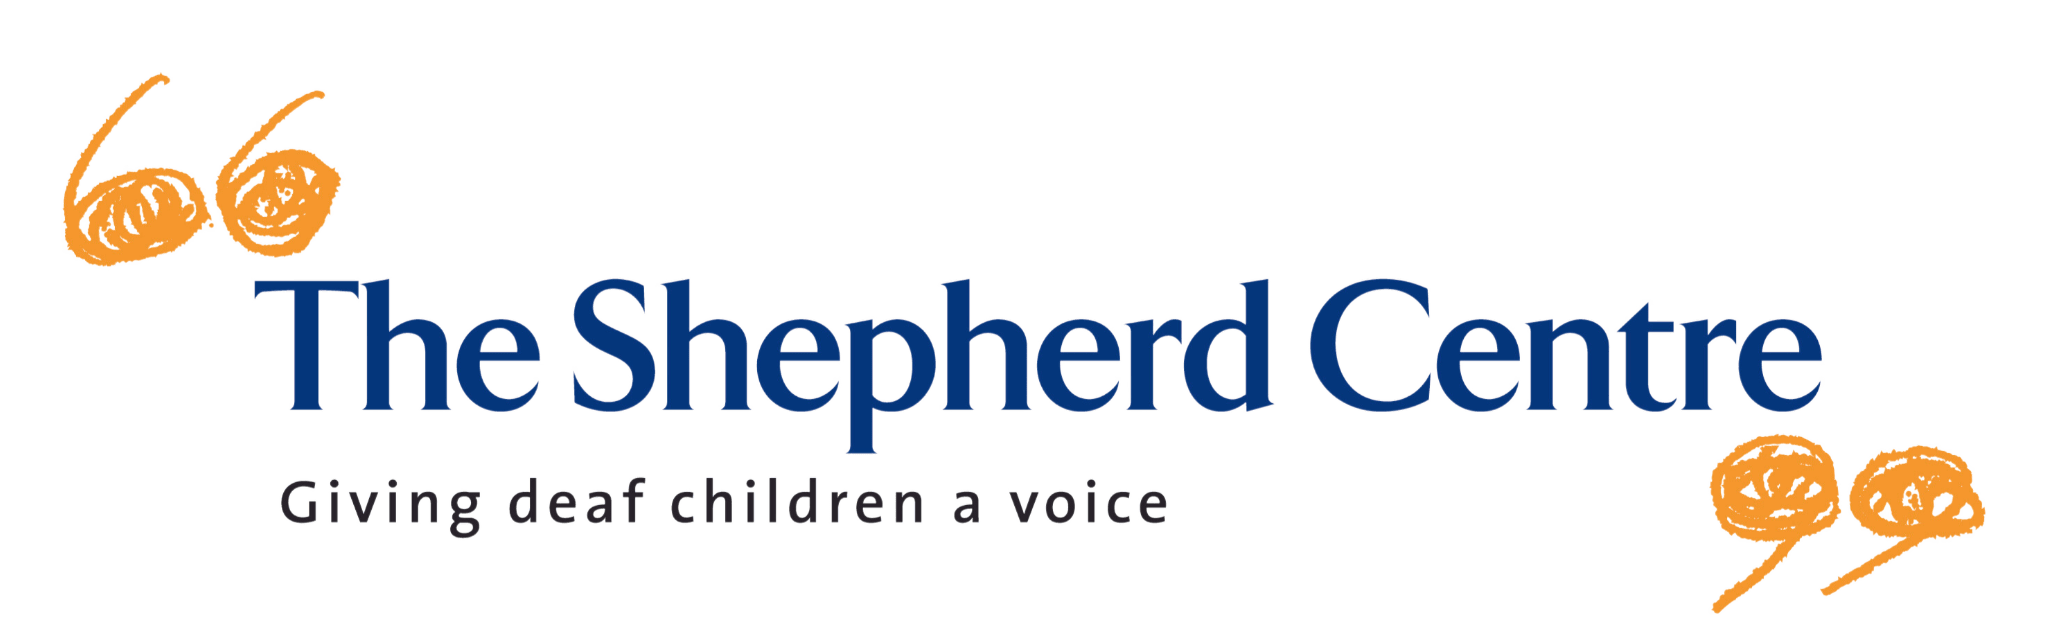 The Shepherd Center